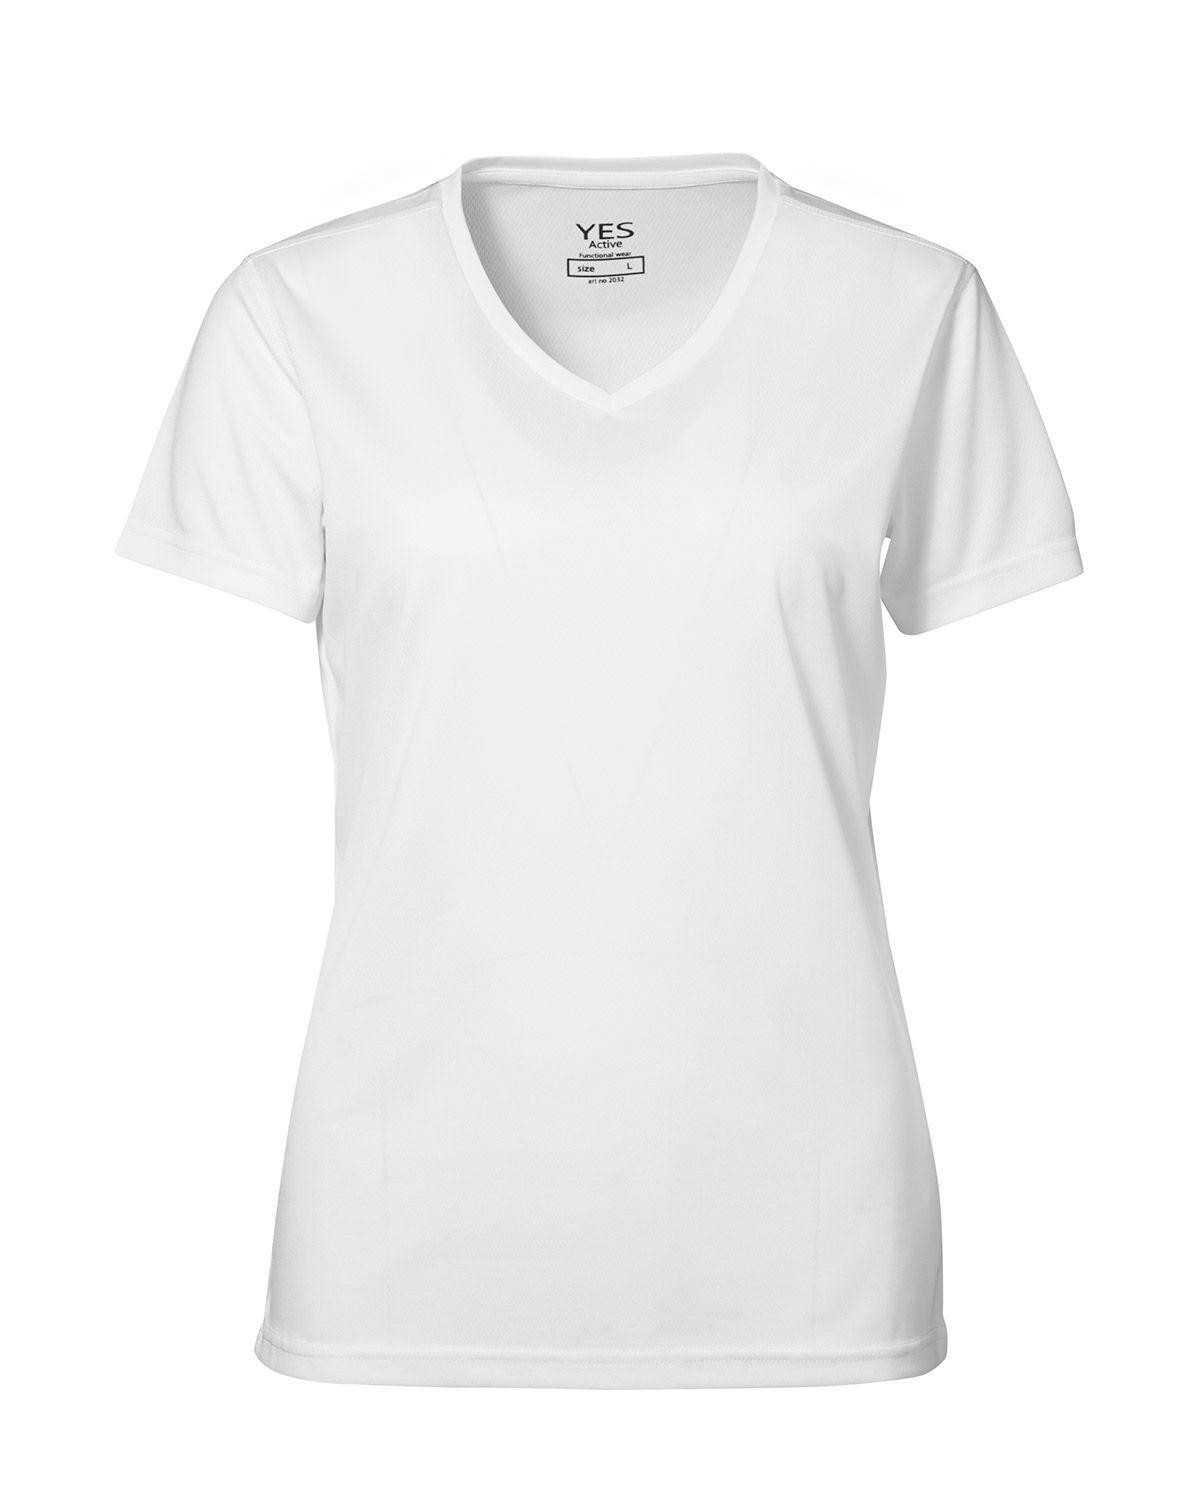 ID YES Svedtransporterende T-shirt til Kvinder (Hvid, S)